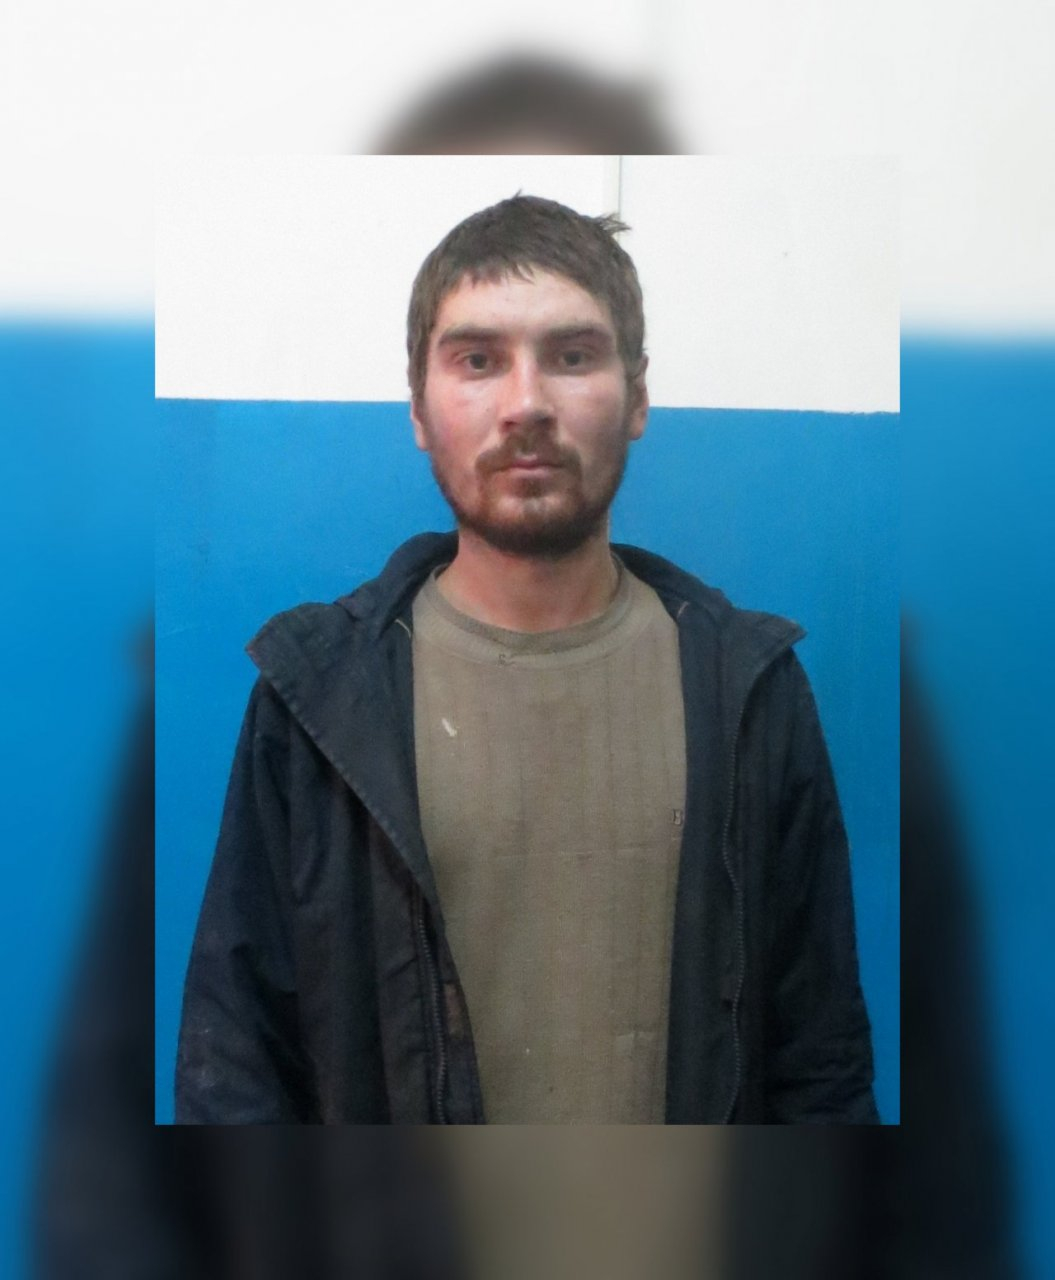 В Мордовии продолжаются поиски без вести пропавшего Андрея Сорокина